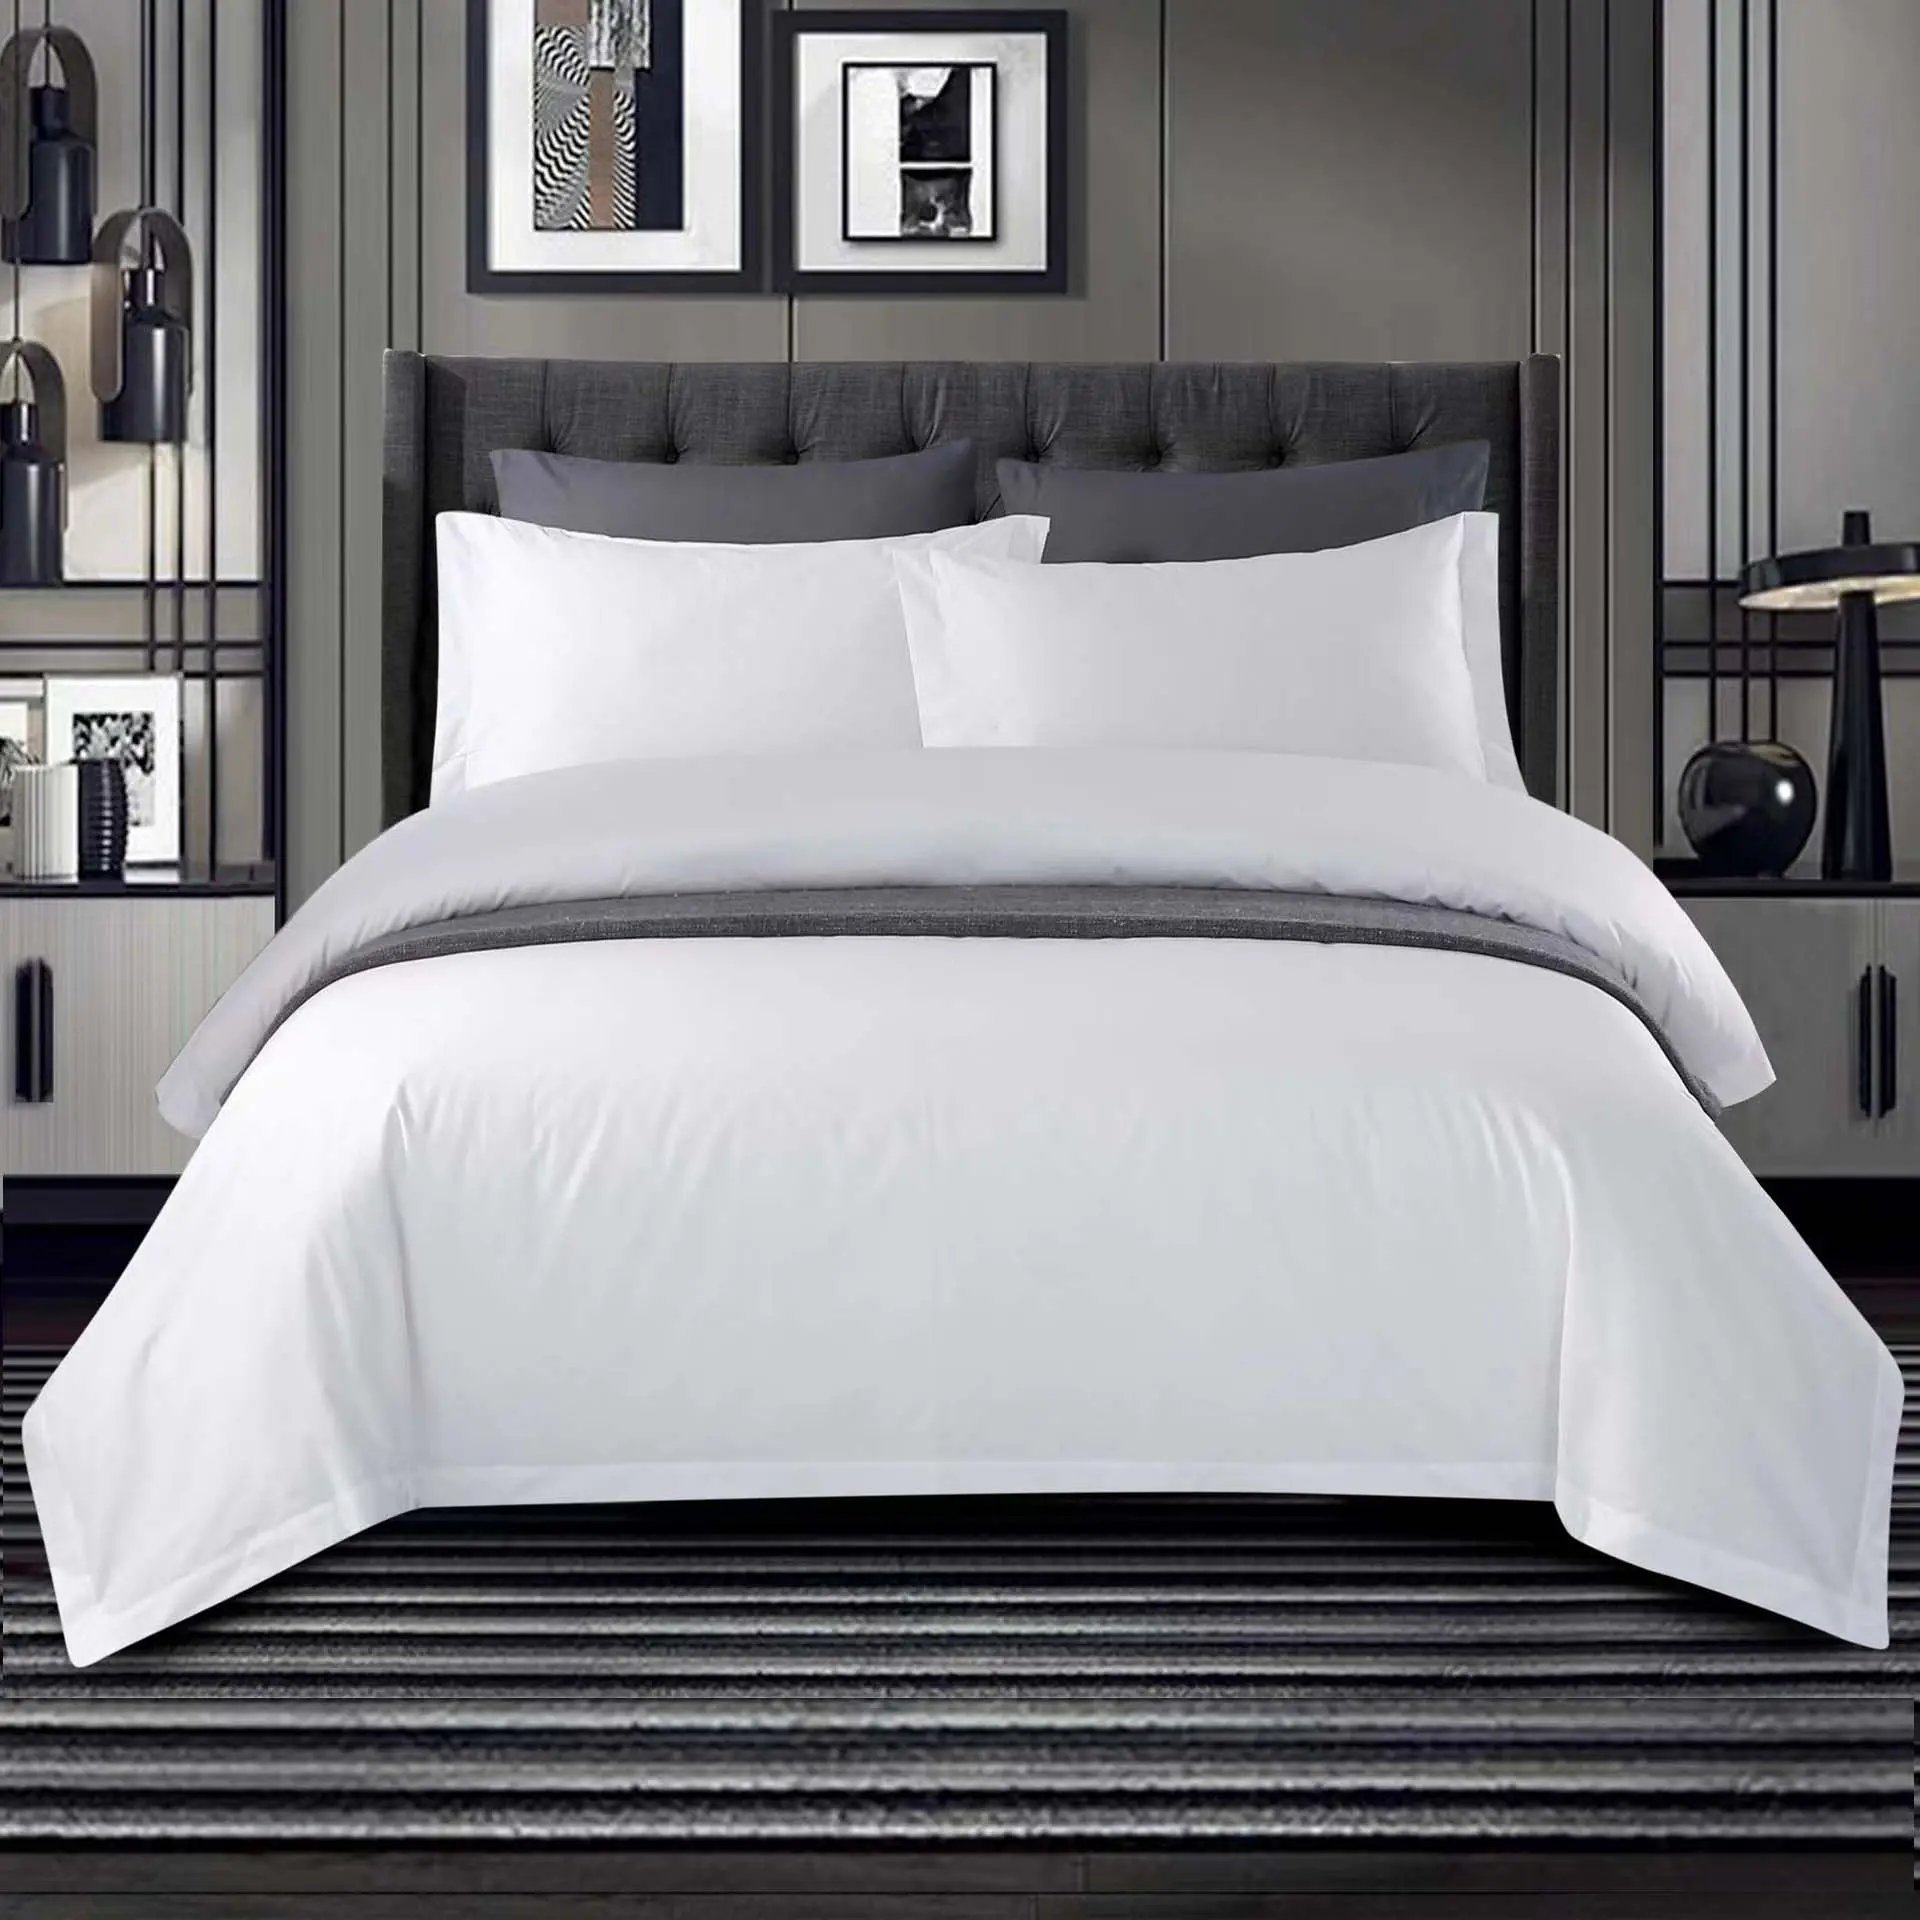 ชุดเครื่องนอนผ้าซาตินผ้าฝ้าย100% ขนาดควีนชุดเครื่องนอนสีขาวจำนวน300ชุดเครื่องนอนโรงแรม